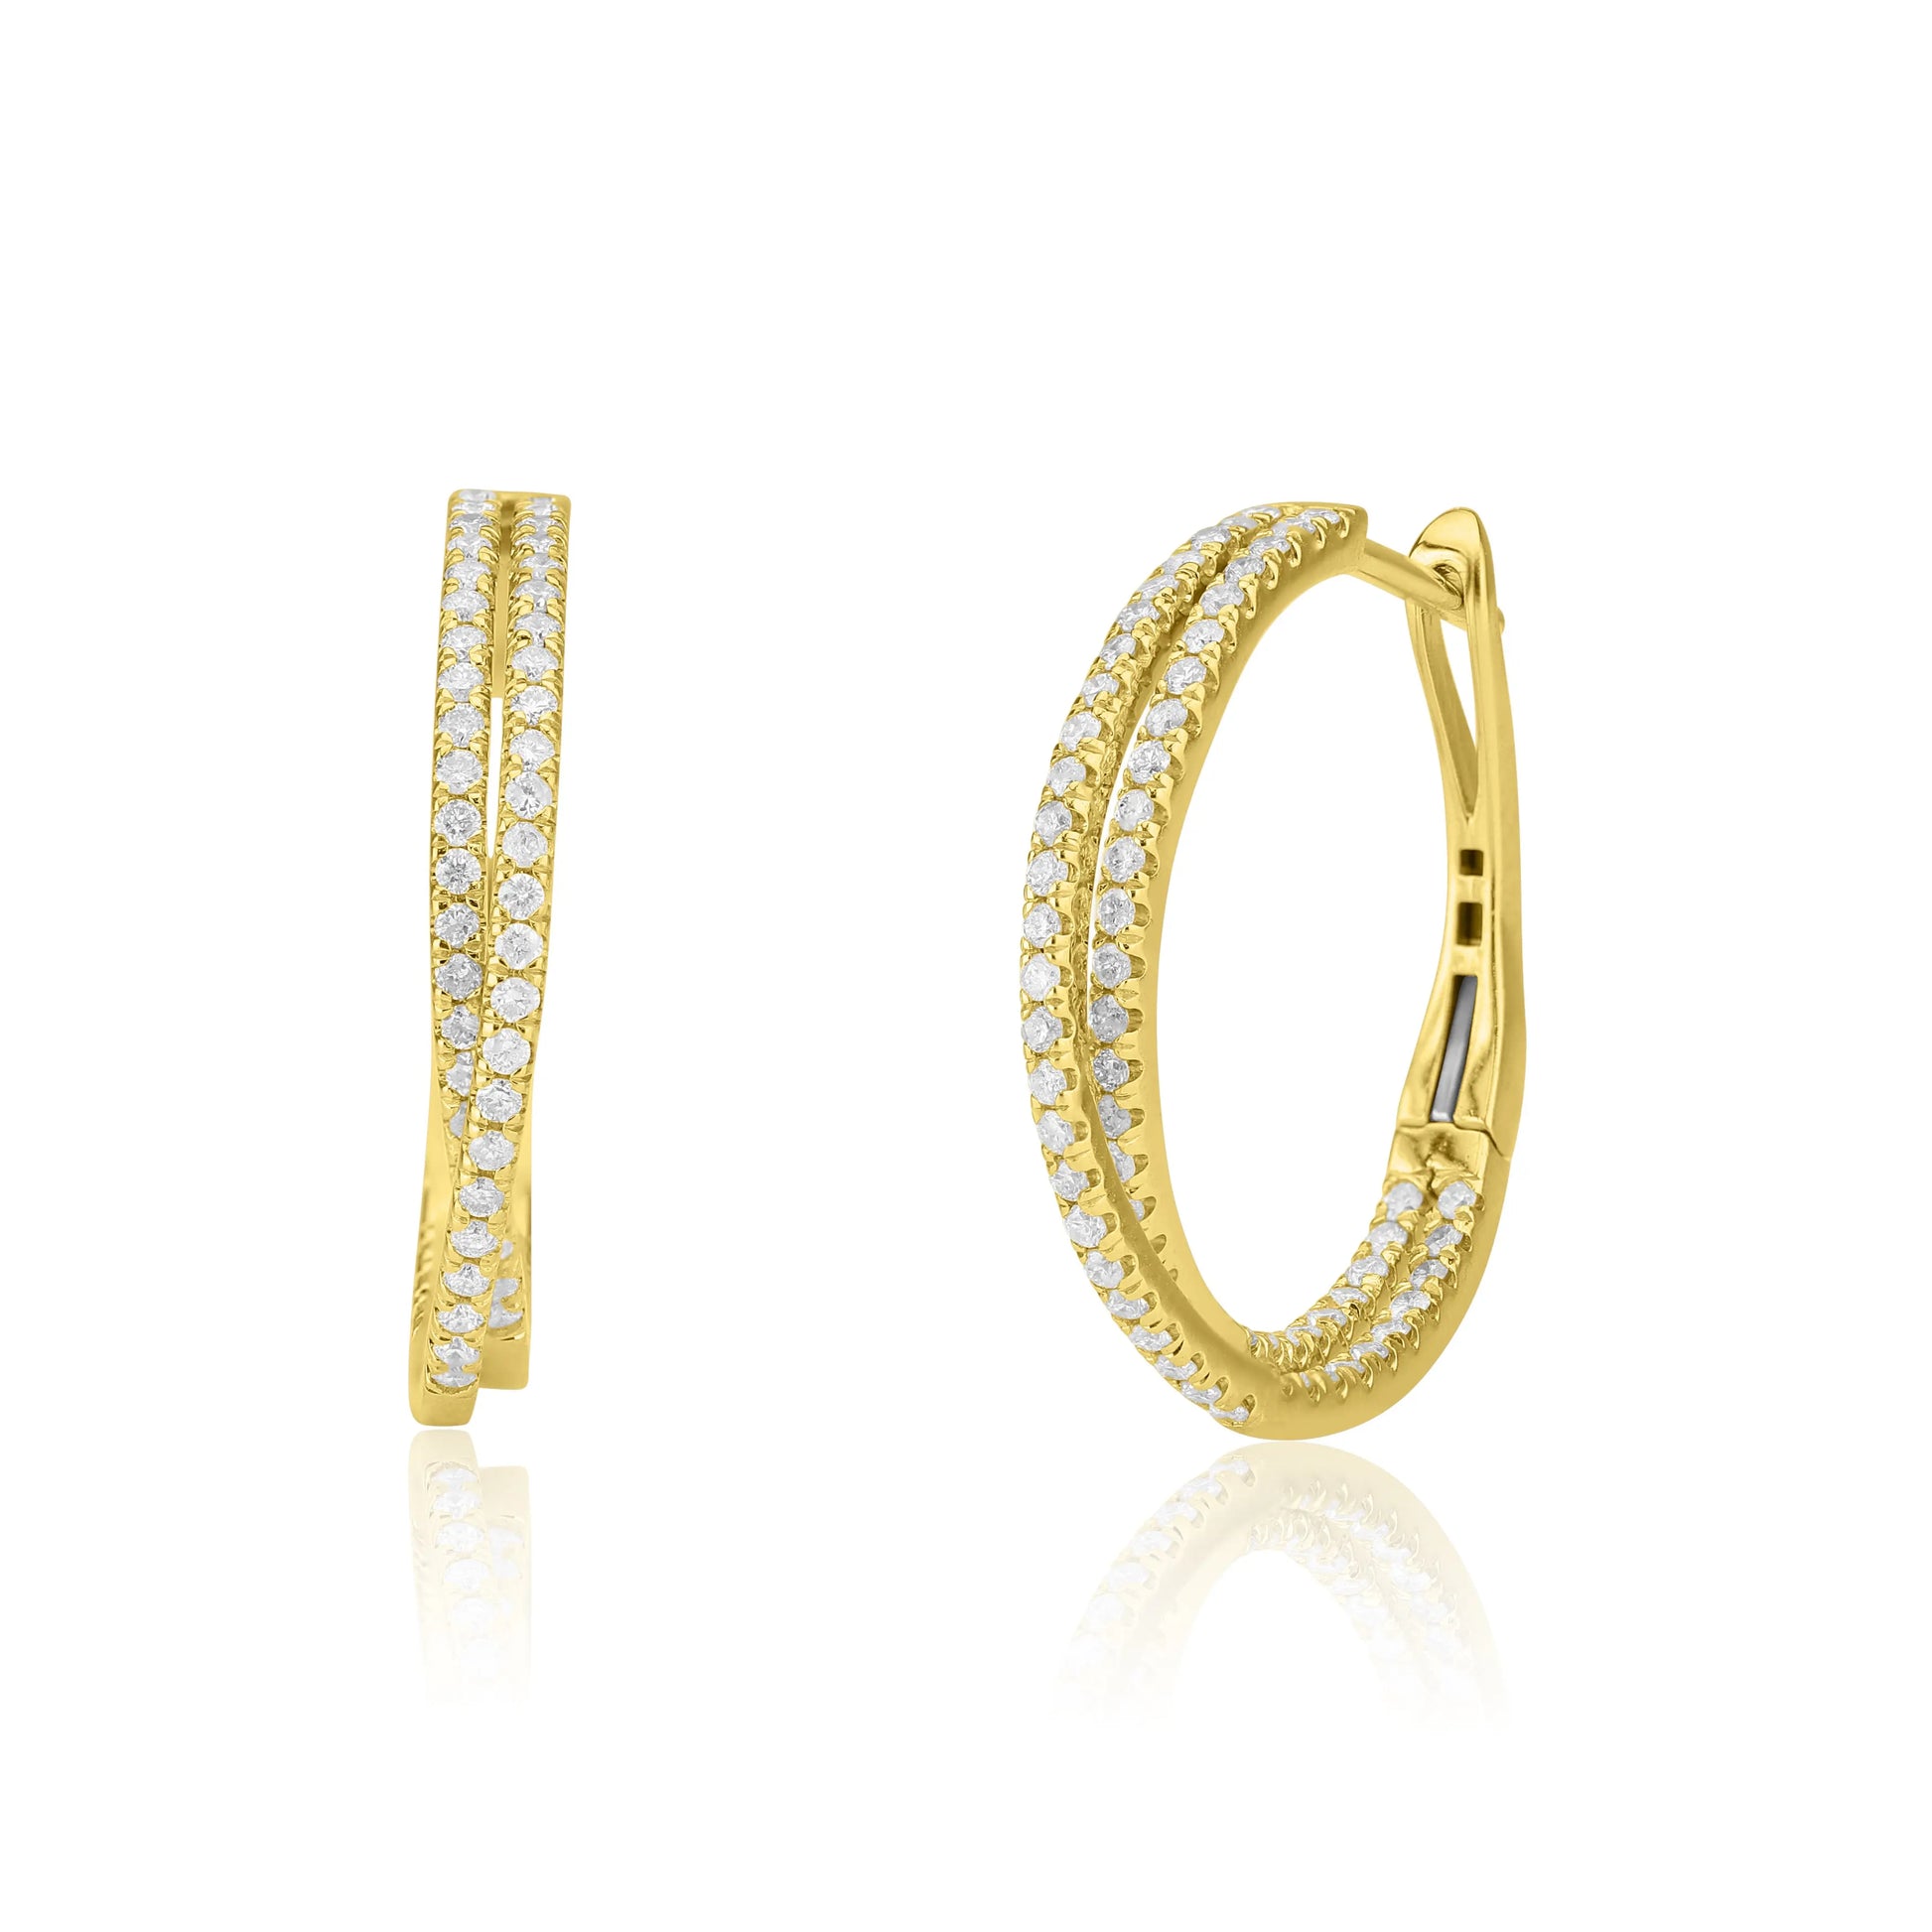 White Gold Earrings Twist Diamond Hoops Earrings dansonjewelers Danson Jewelers 